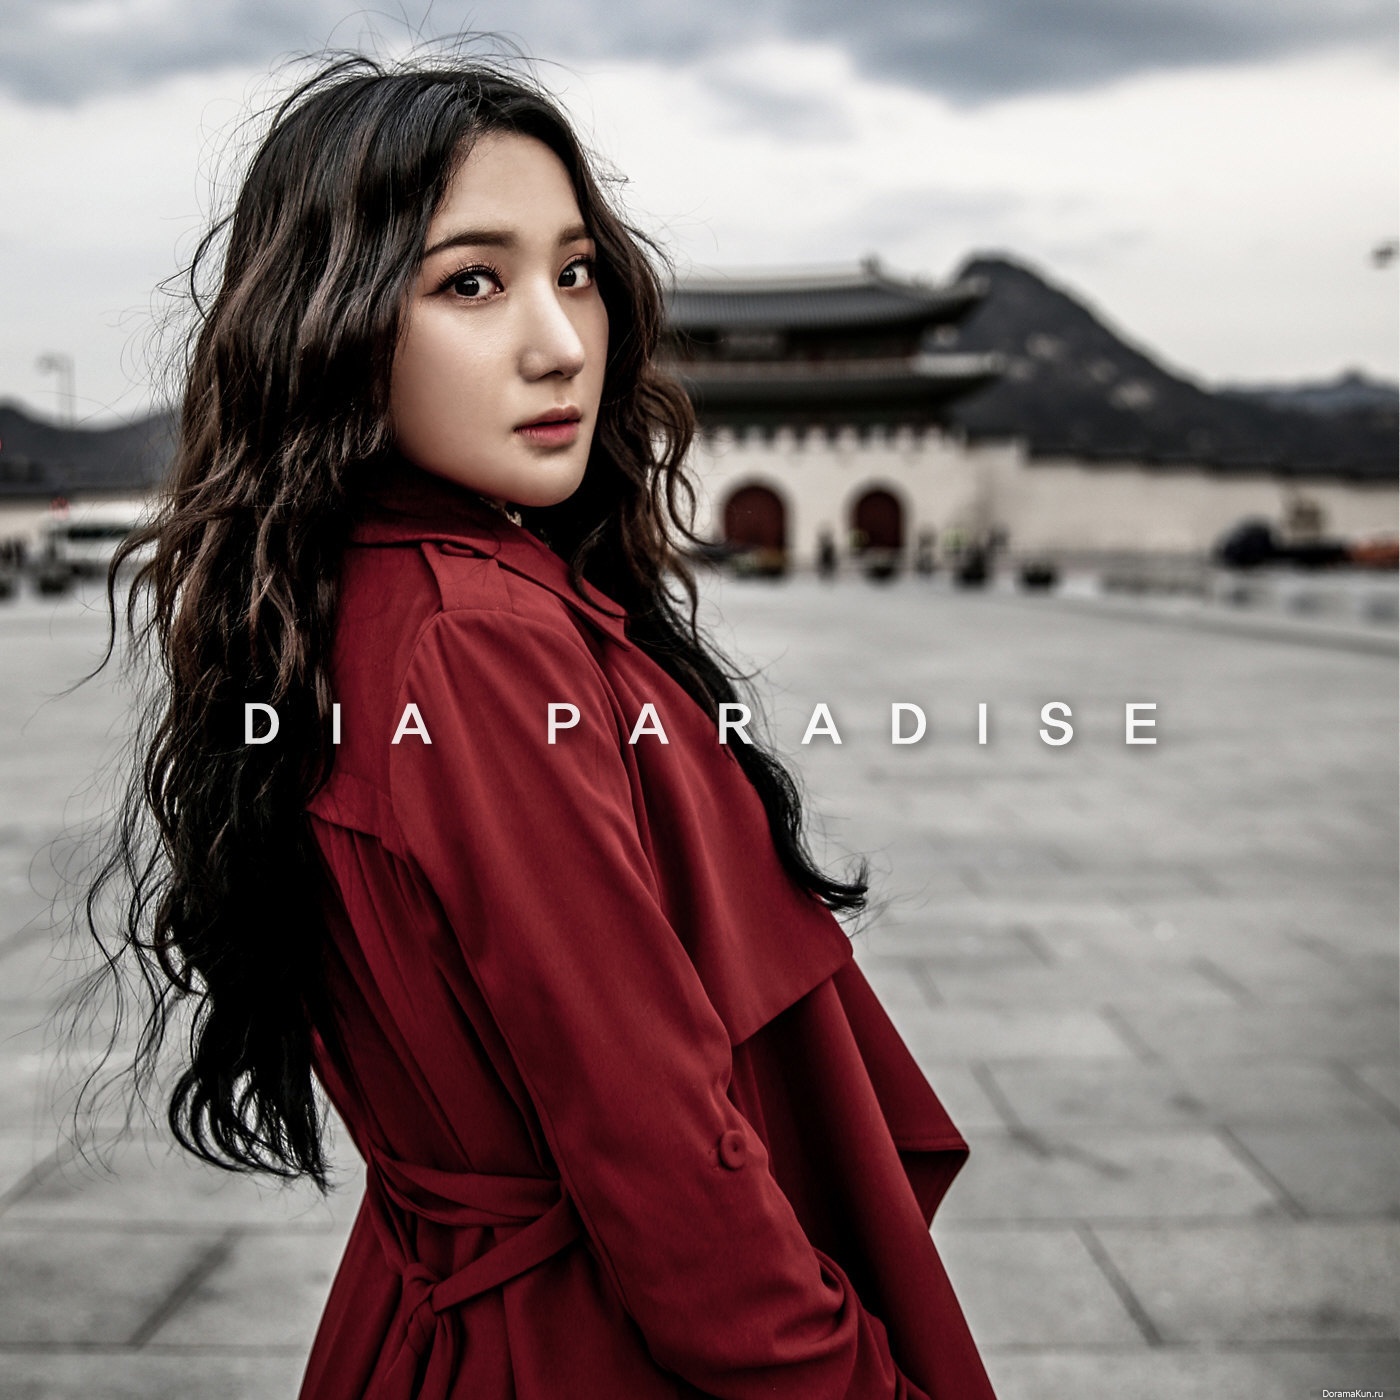 Asia песня. Певица d.n.d.m. Популярная азиатская песня. Paradis+.